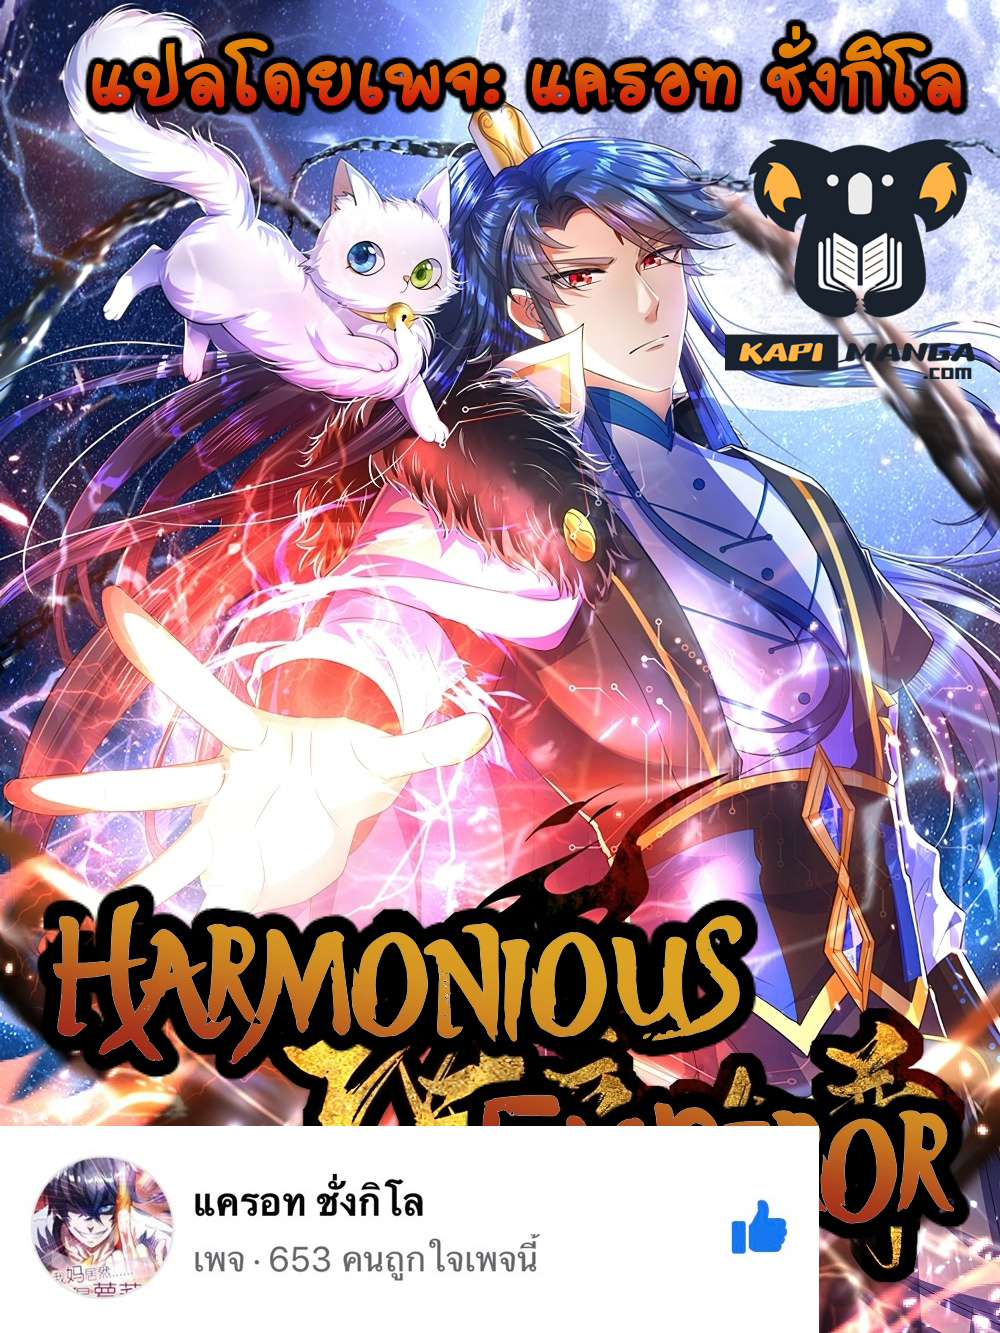 Harmonious Emperor is respected 88-88